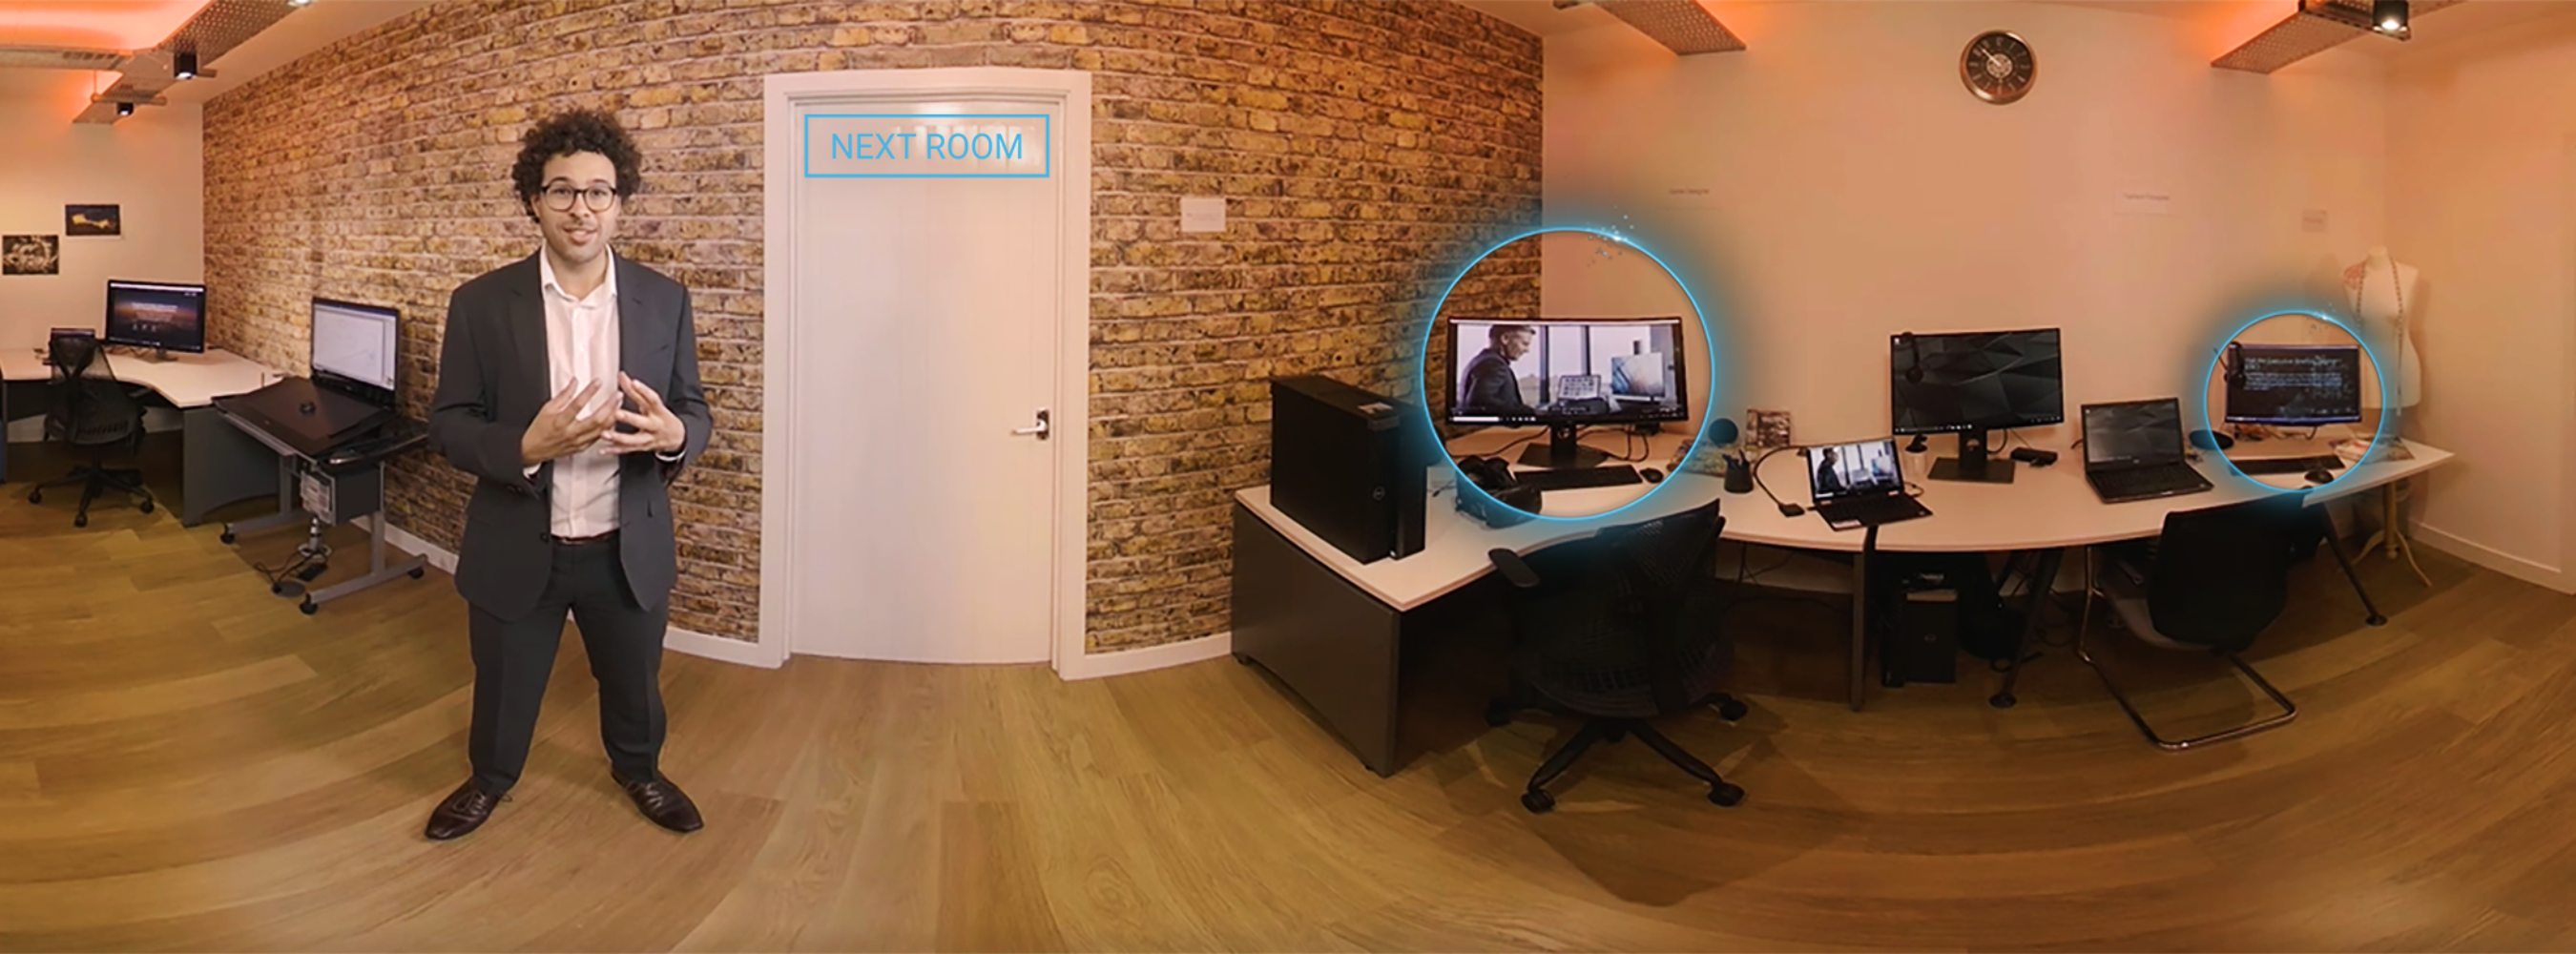 Dell Experience Centre VR